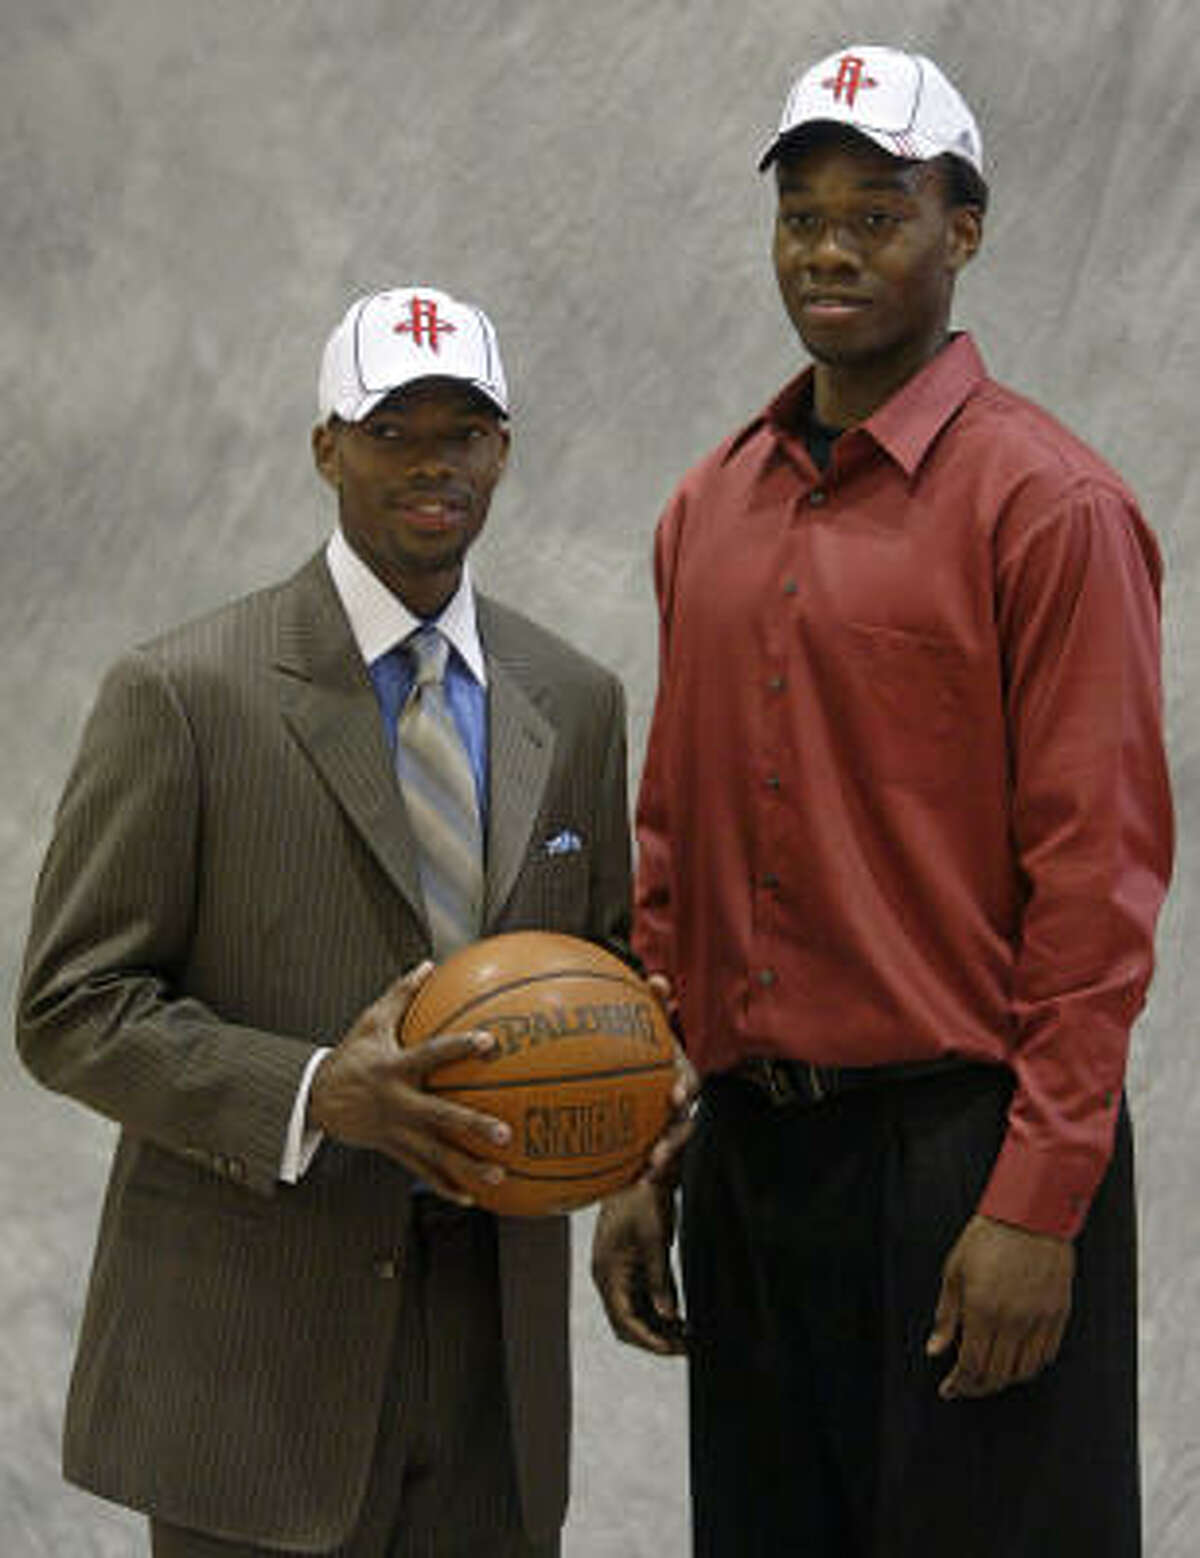 Brooks' NBA career